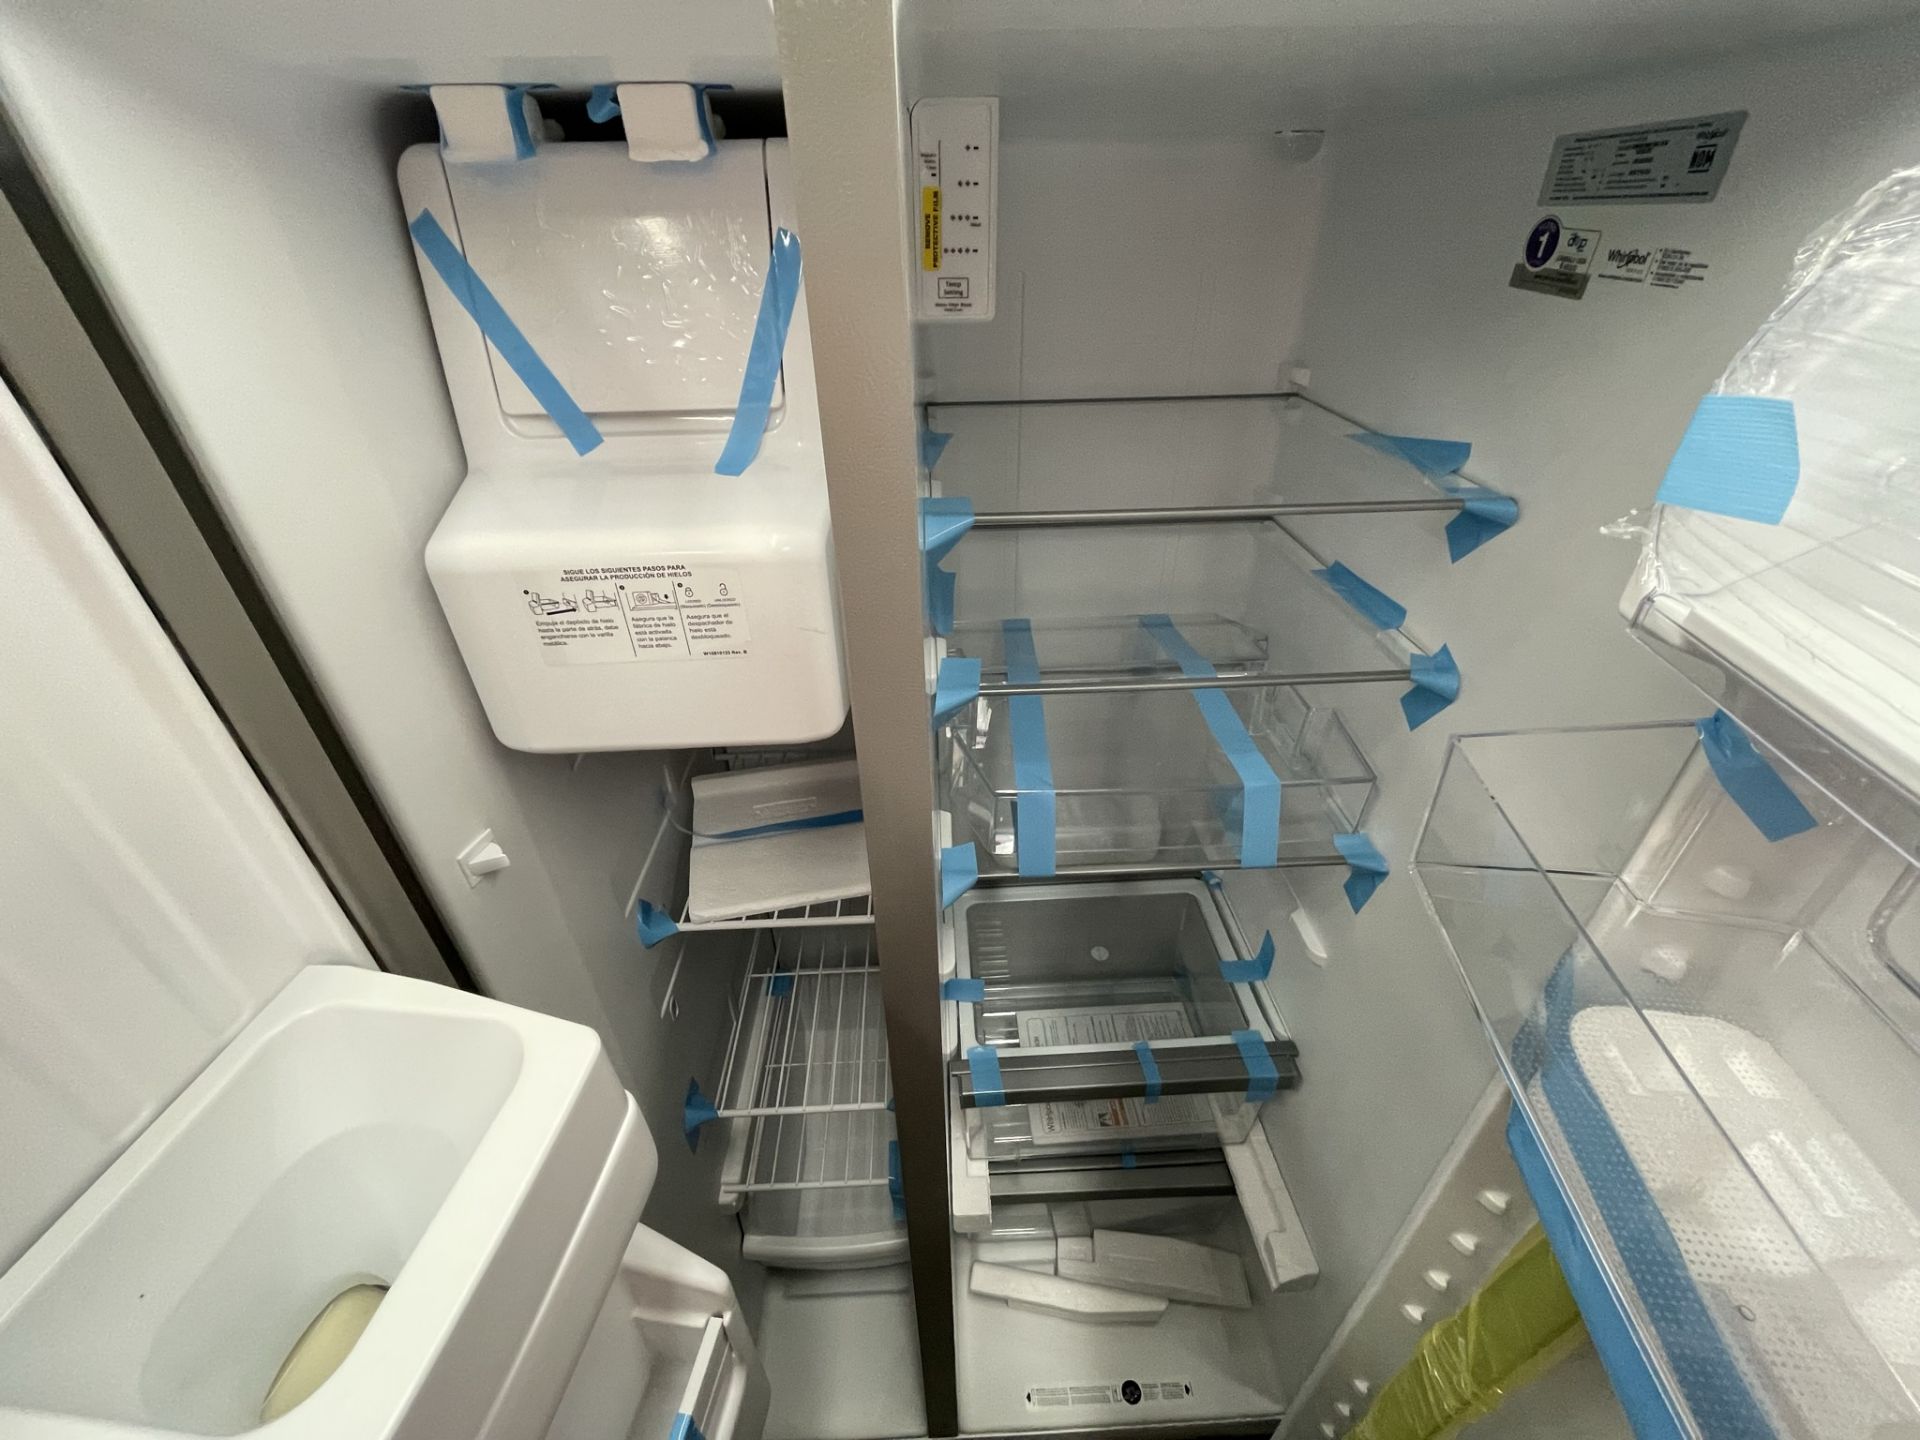 (EQUIPO NUEVO) 1 Refrigerador con dispensador de agua Marca WHIRLPOOL, Modelo WD2620S, Serie 795780 - Image 8 of 9